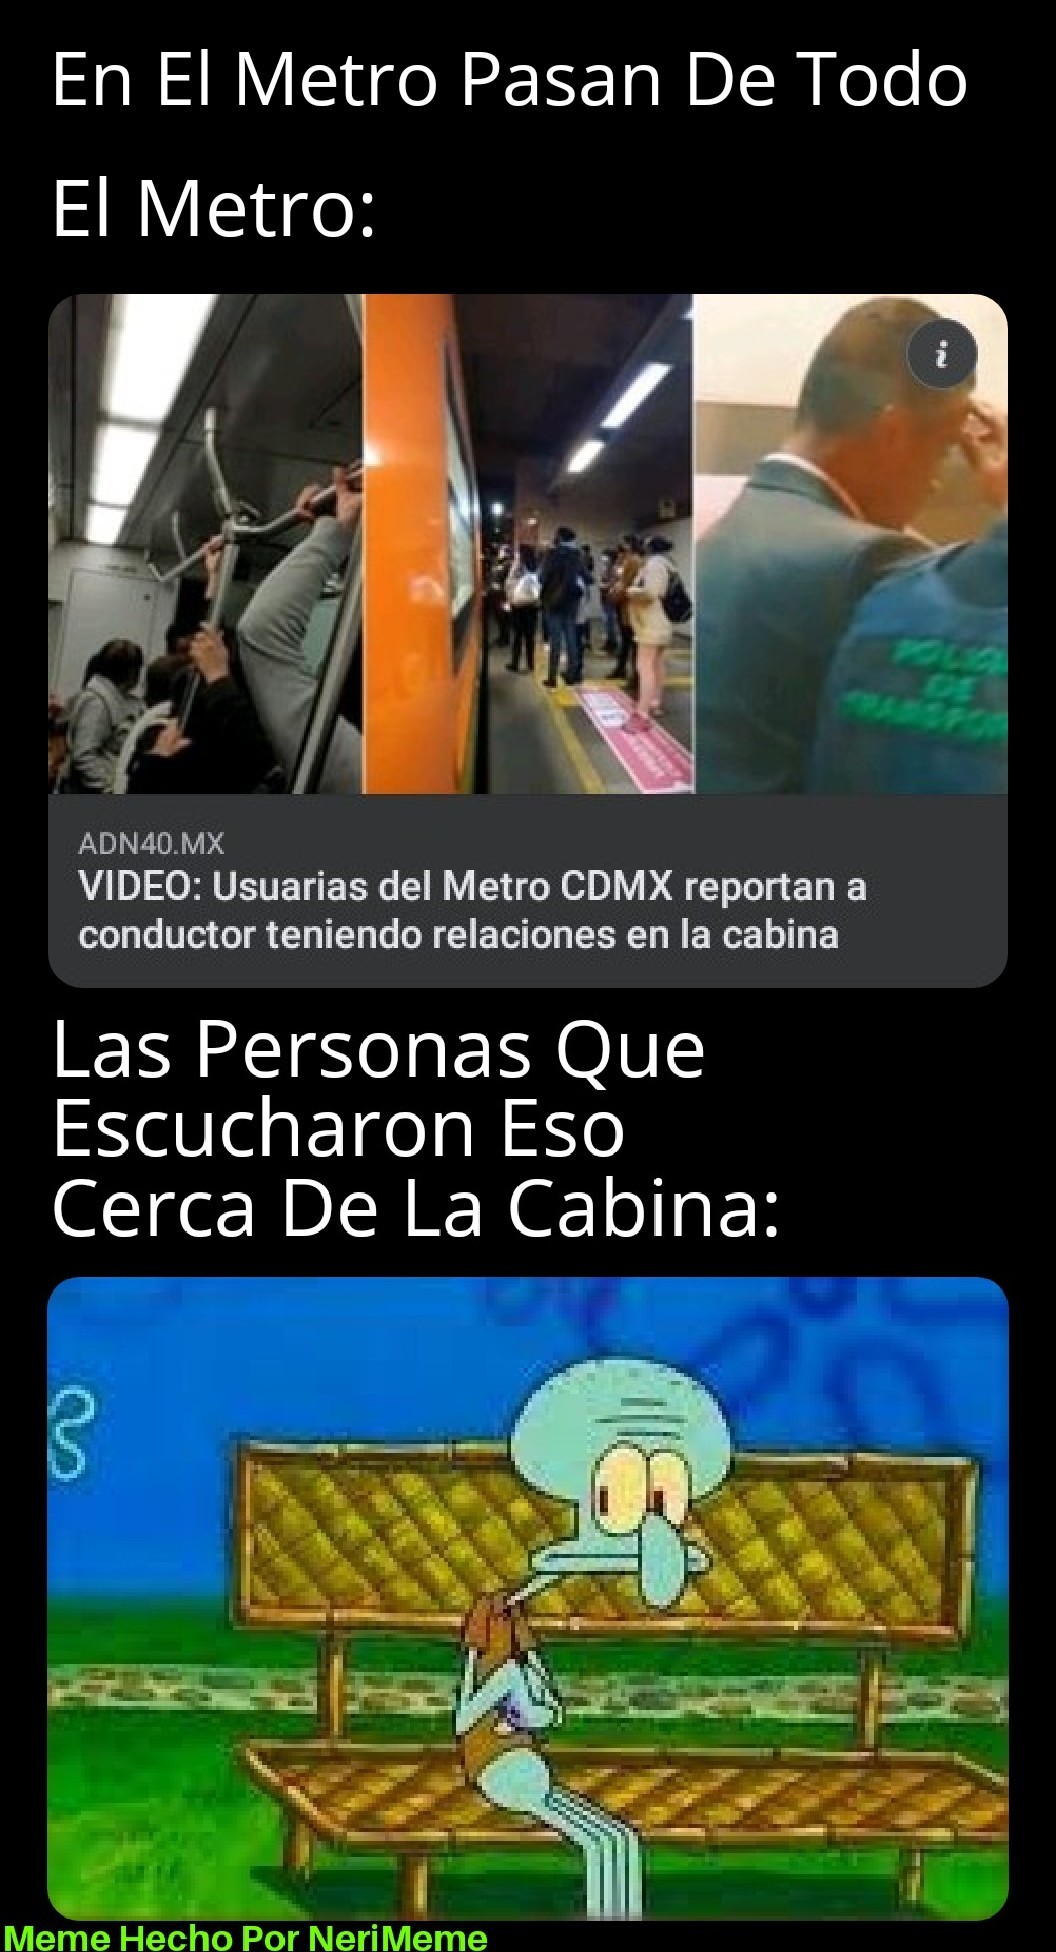 El Metro Que Pasan De Todo - meme